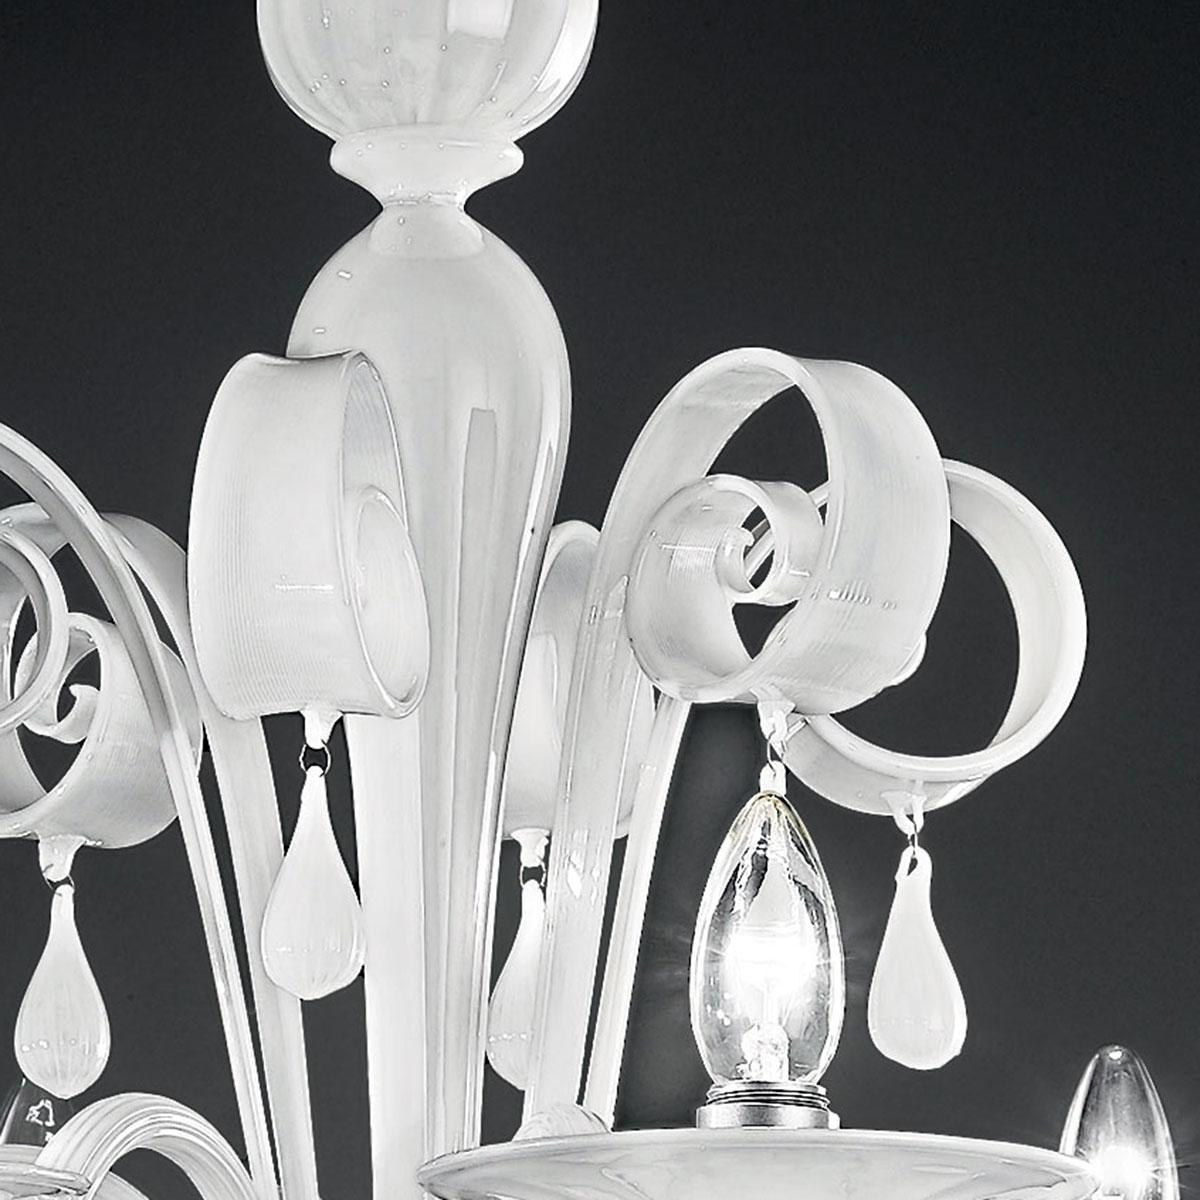 "Stige" lustre en cristal de Murano - 6 lumières - blanc